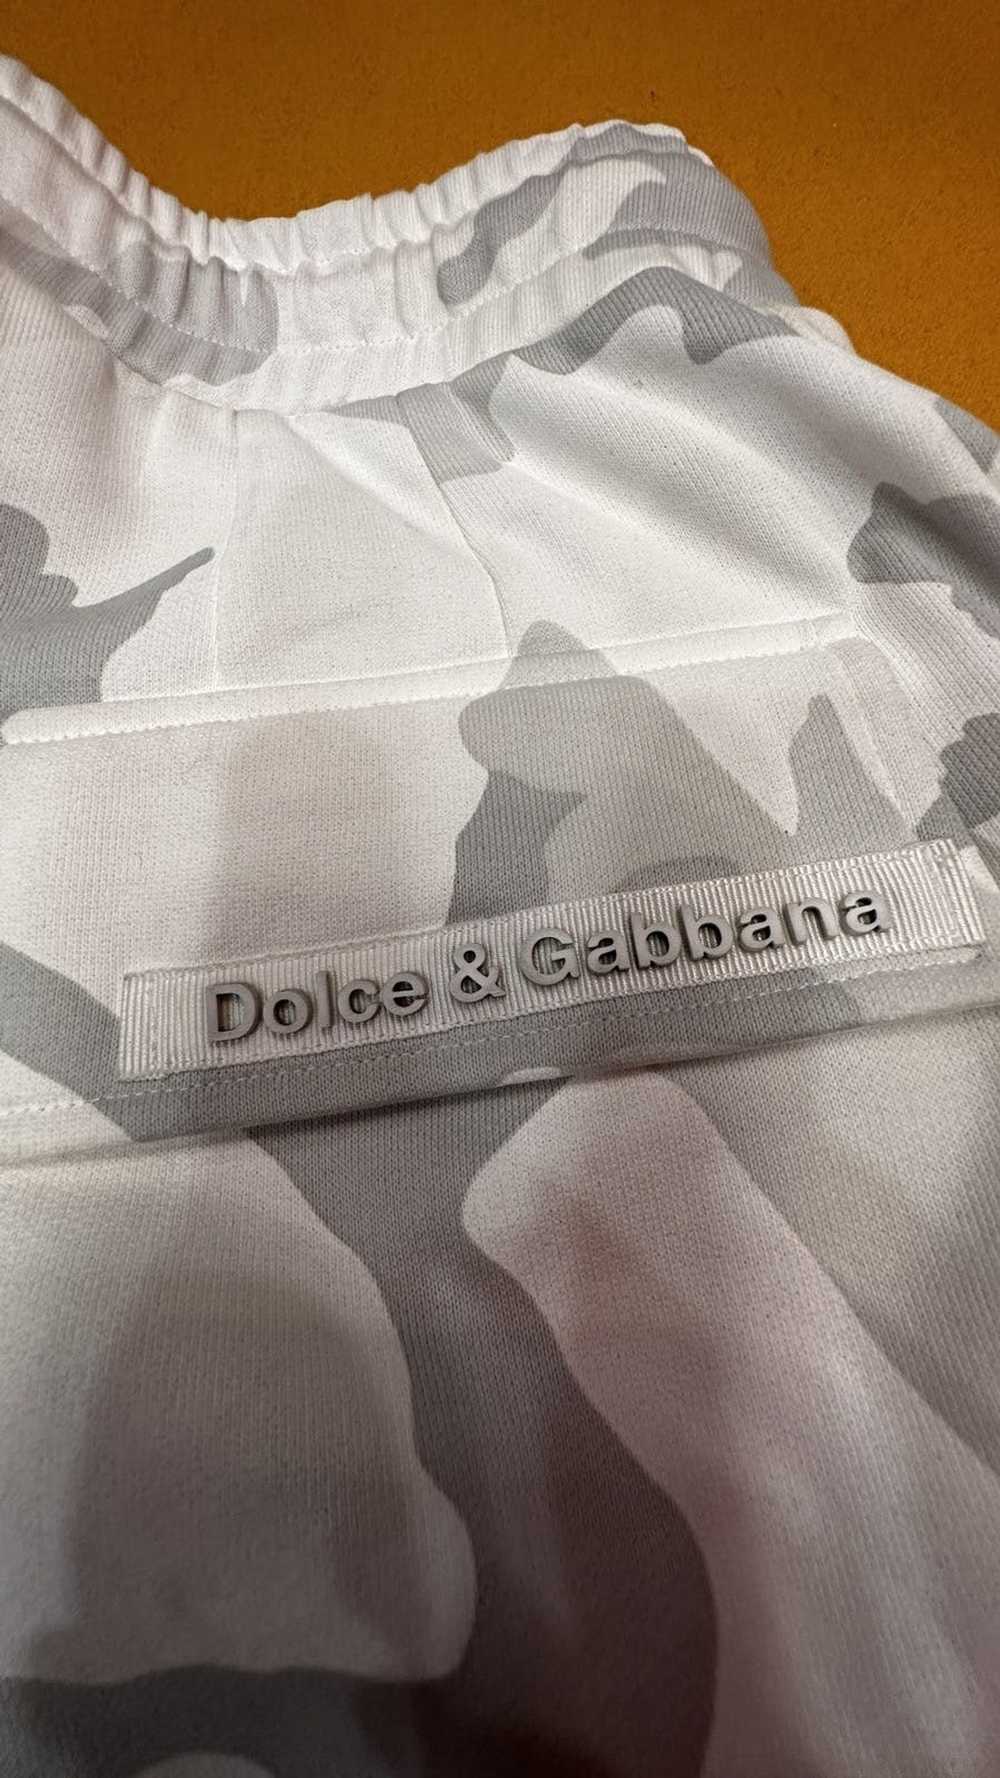 Dolce & Gabbana Dolce & Gabana Camo white sweatpa… - image 7